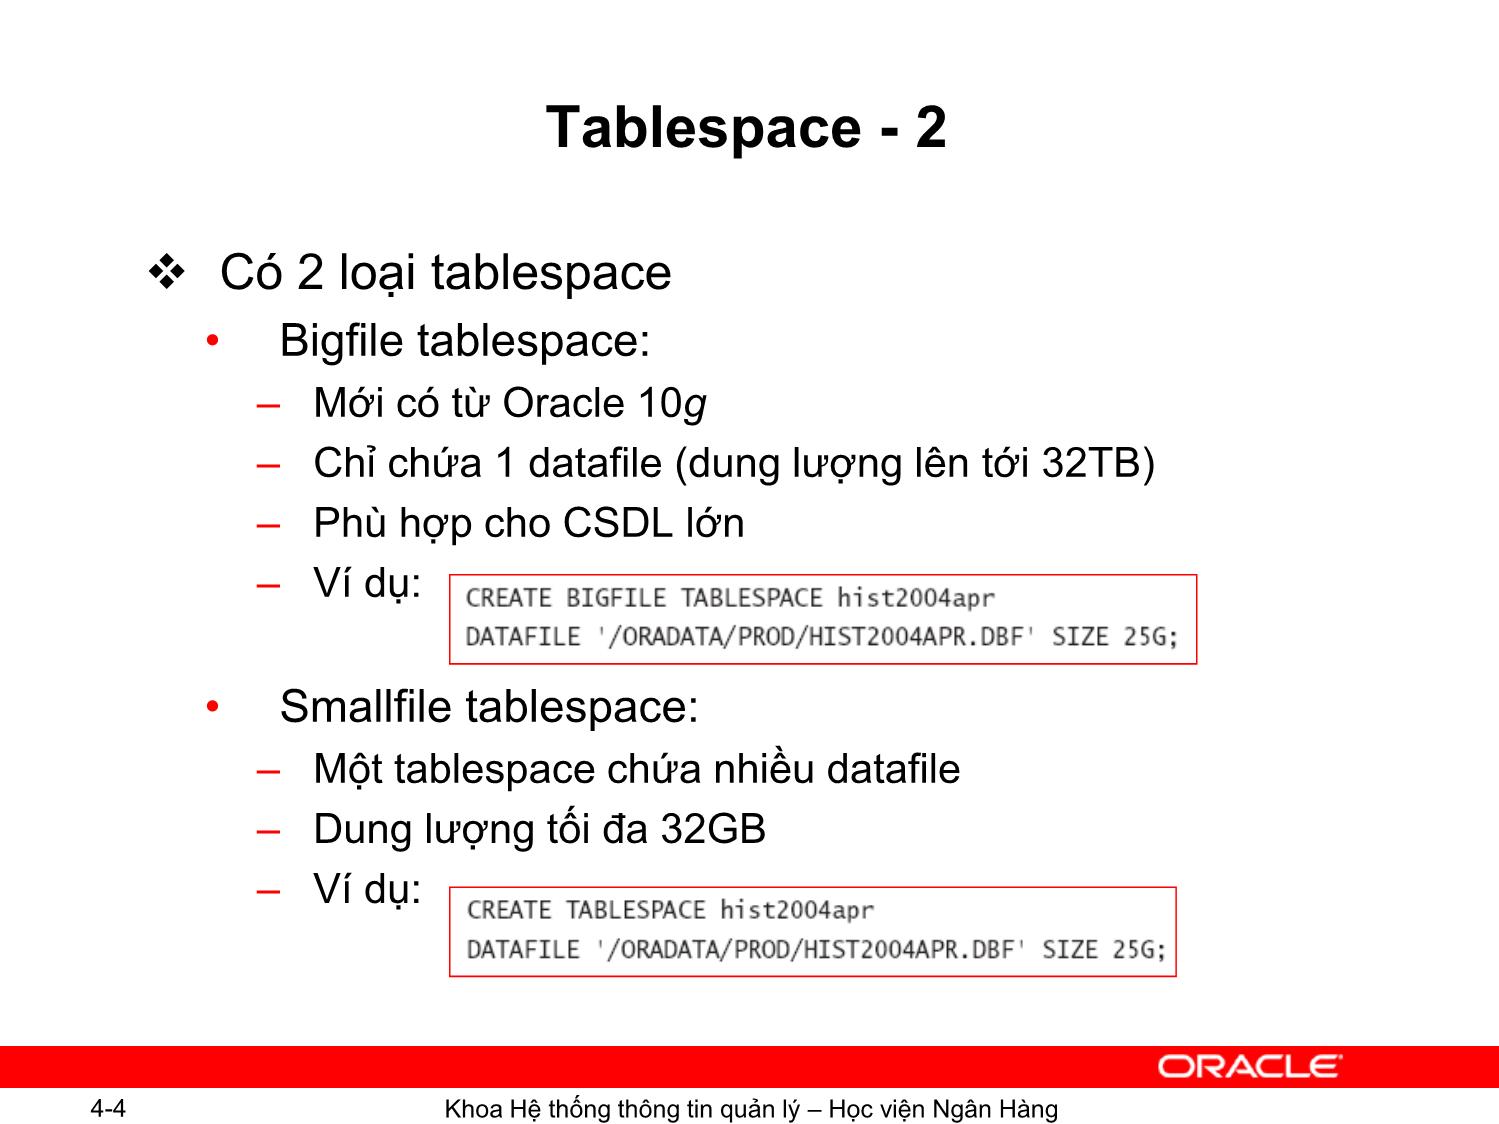 Bài giảng Hệ quản trị cơ sơ dữ liệu Oracle - Chương 4: Các đối tượng trong cơ sở dữ liệu - Ngô Thùy Linh trang 4